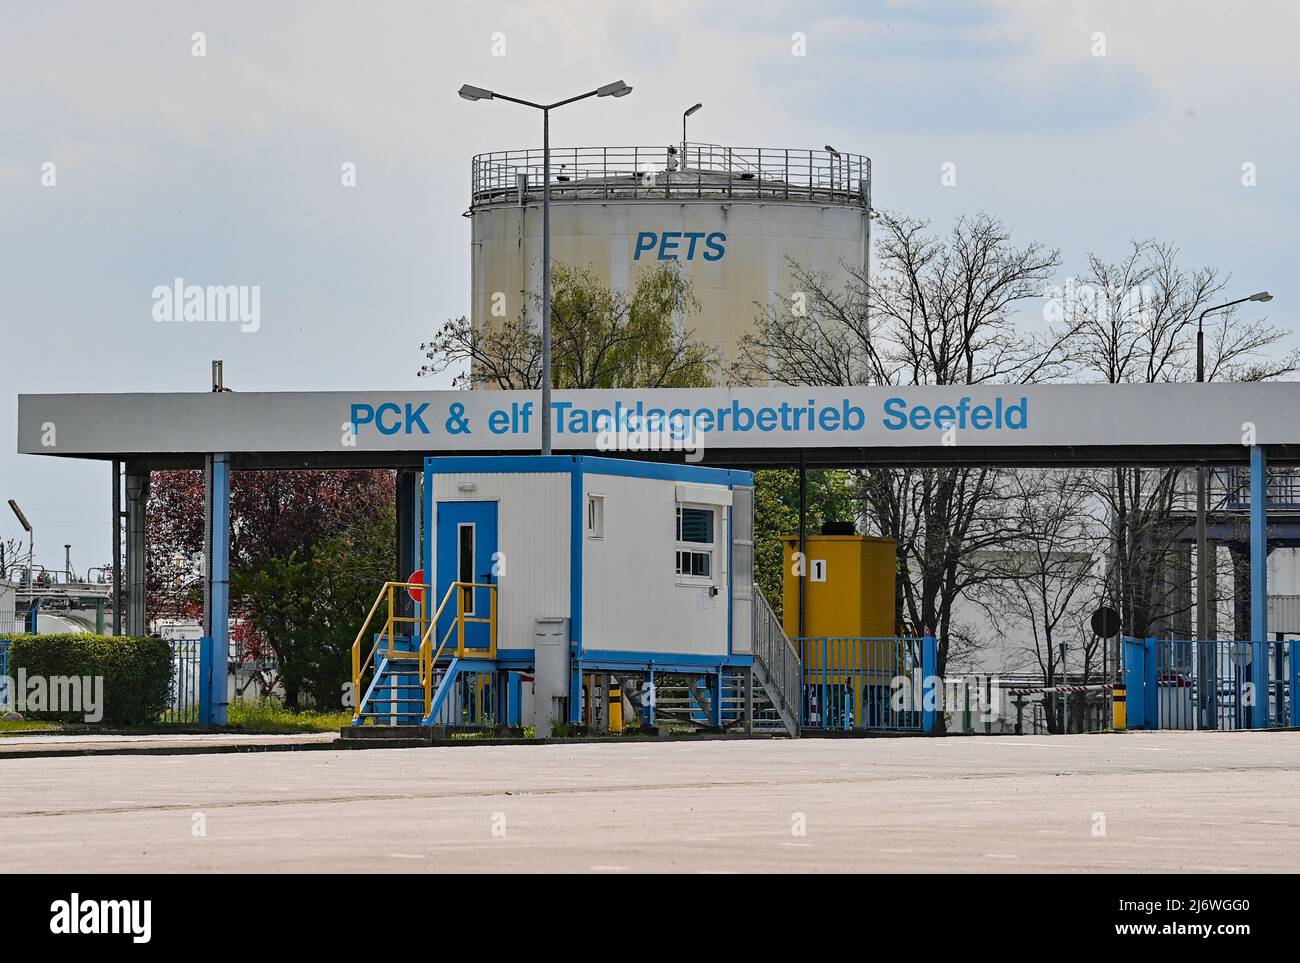 04 mai 2022, Brandebourg, Seefeld: L'entrée principale du site de PCK et de l'elfe Tanklagerbetrieb Seefeld GbR. Le pétrole brut de Russie arrive à la raffinerie de pétrole PCK à Schwedt via le pipeline « Friendship ». L'année dernière, le groupe énergétique russe Rosneft a pris en charge une grande partie de la raffinerie de pétrole PCK à Schwedt. Rosneft est le plus grand producteur de pétrole de Russie. Selon ses propres informations, la raffinerie de la région d'Uckermark traite chaque année 12 millions de tonnes de pétrole brut, ce qui en fait l'un des plus grands sites de transformation d'Allemagne. Photo: Patrick Pleul/dpa Banque D'Images